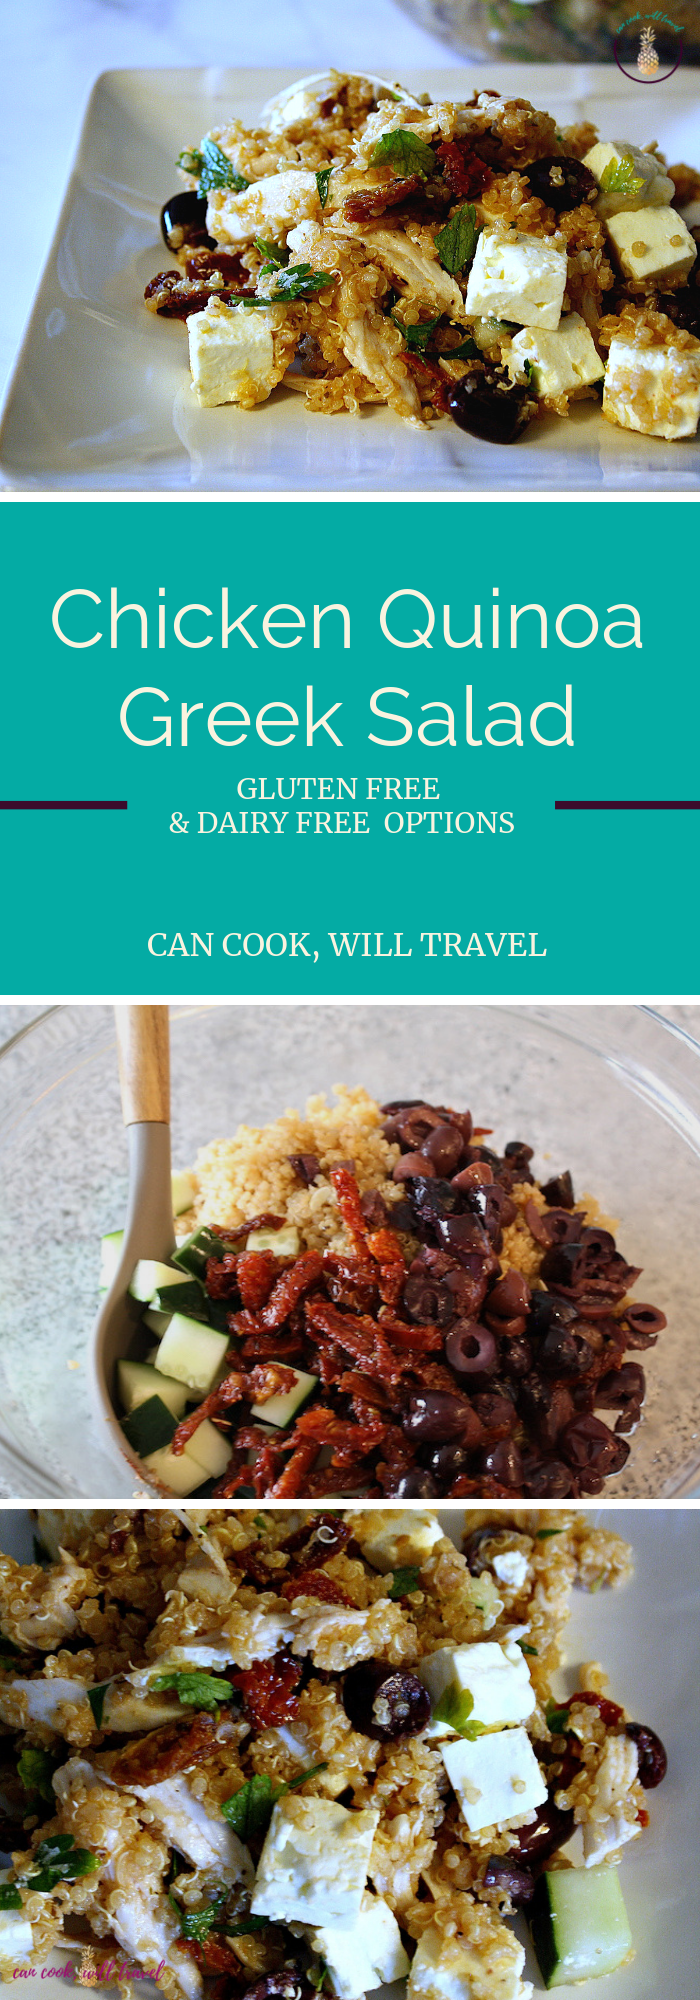 Chicken Quinoa Greek Salad_Collage2